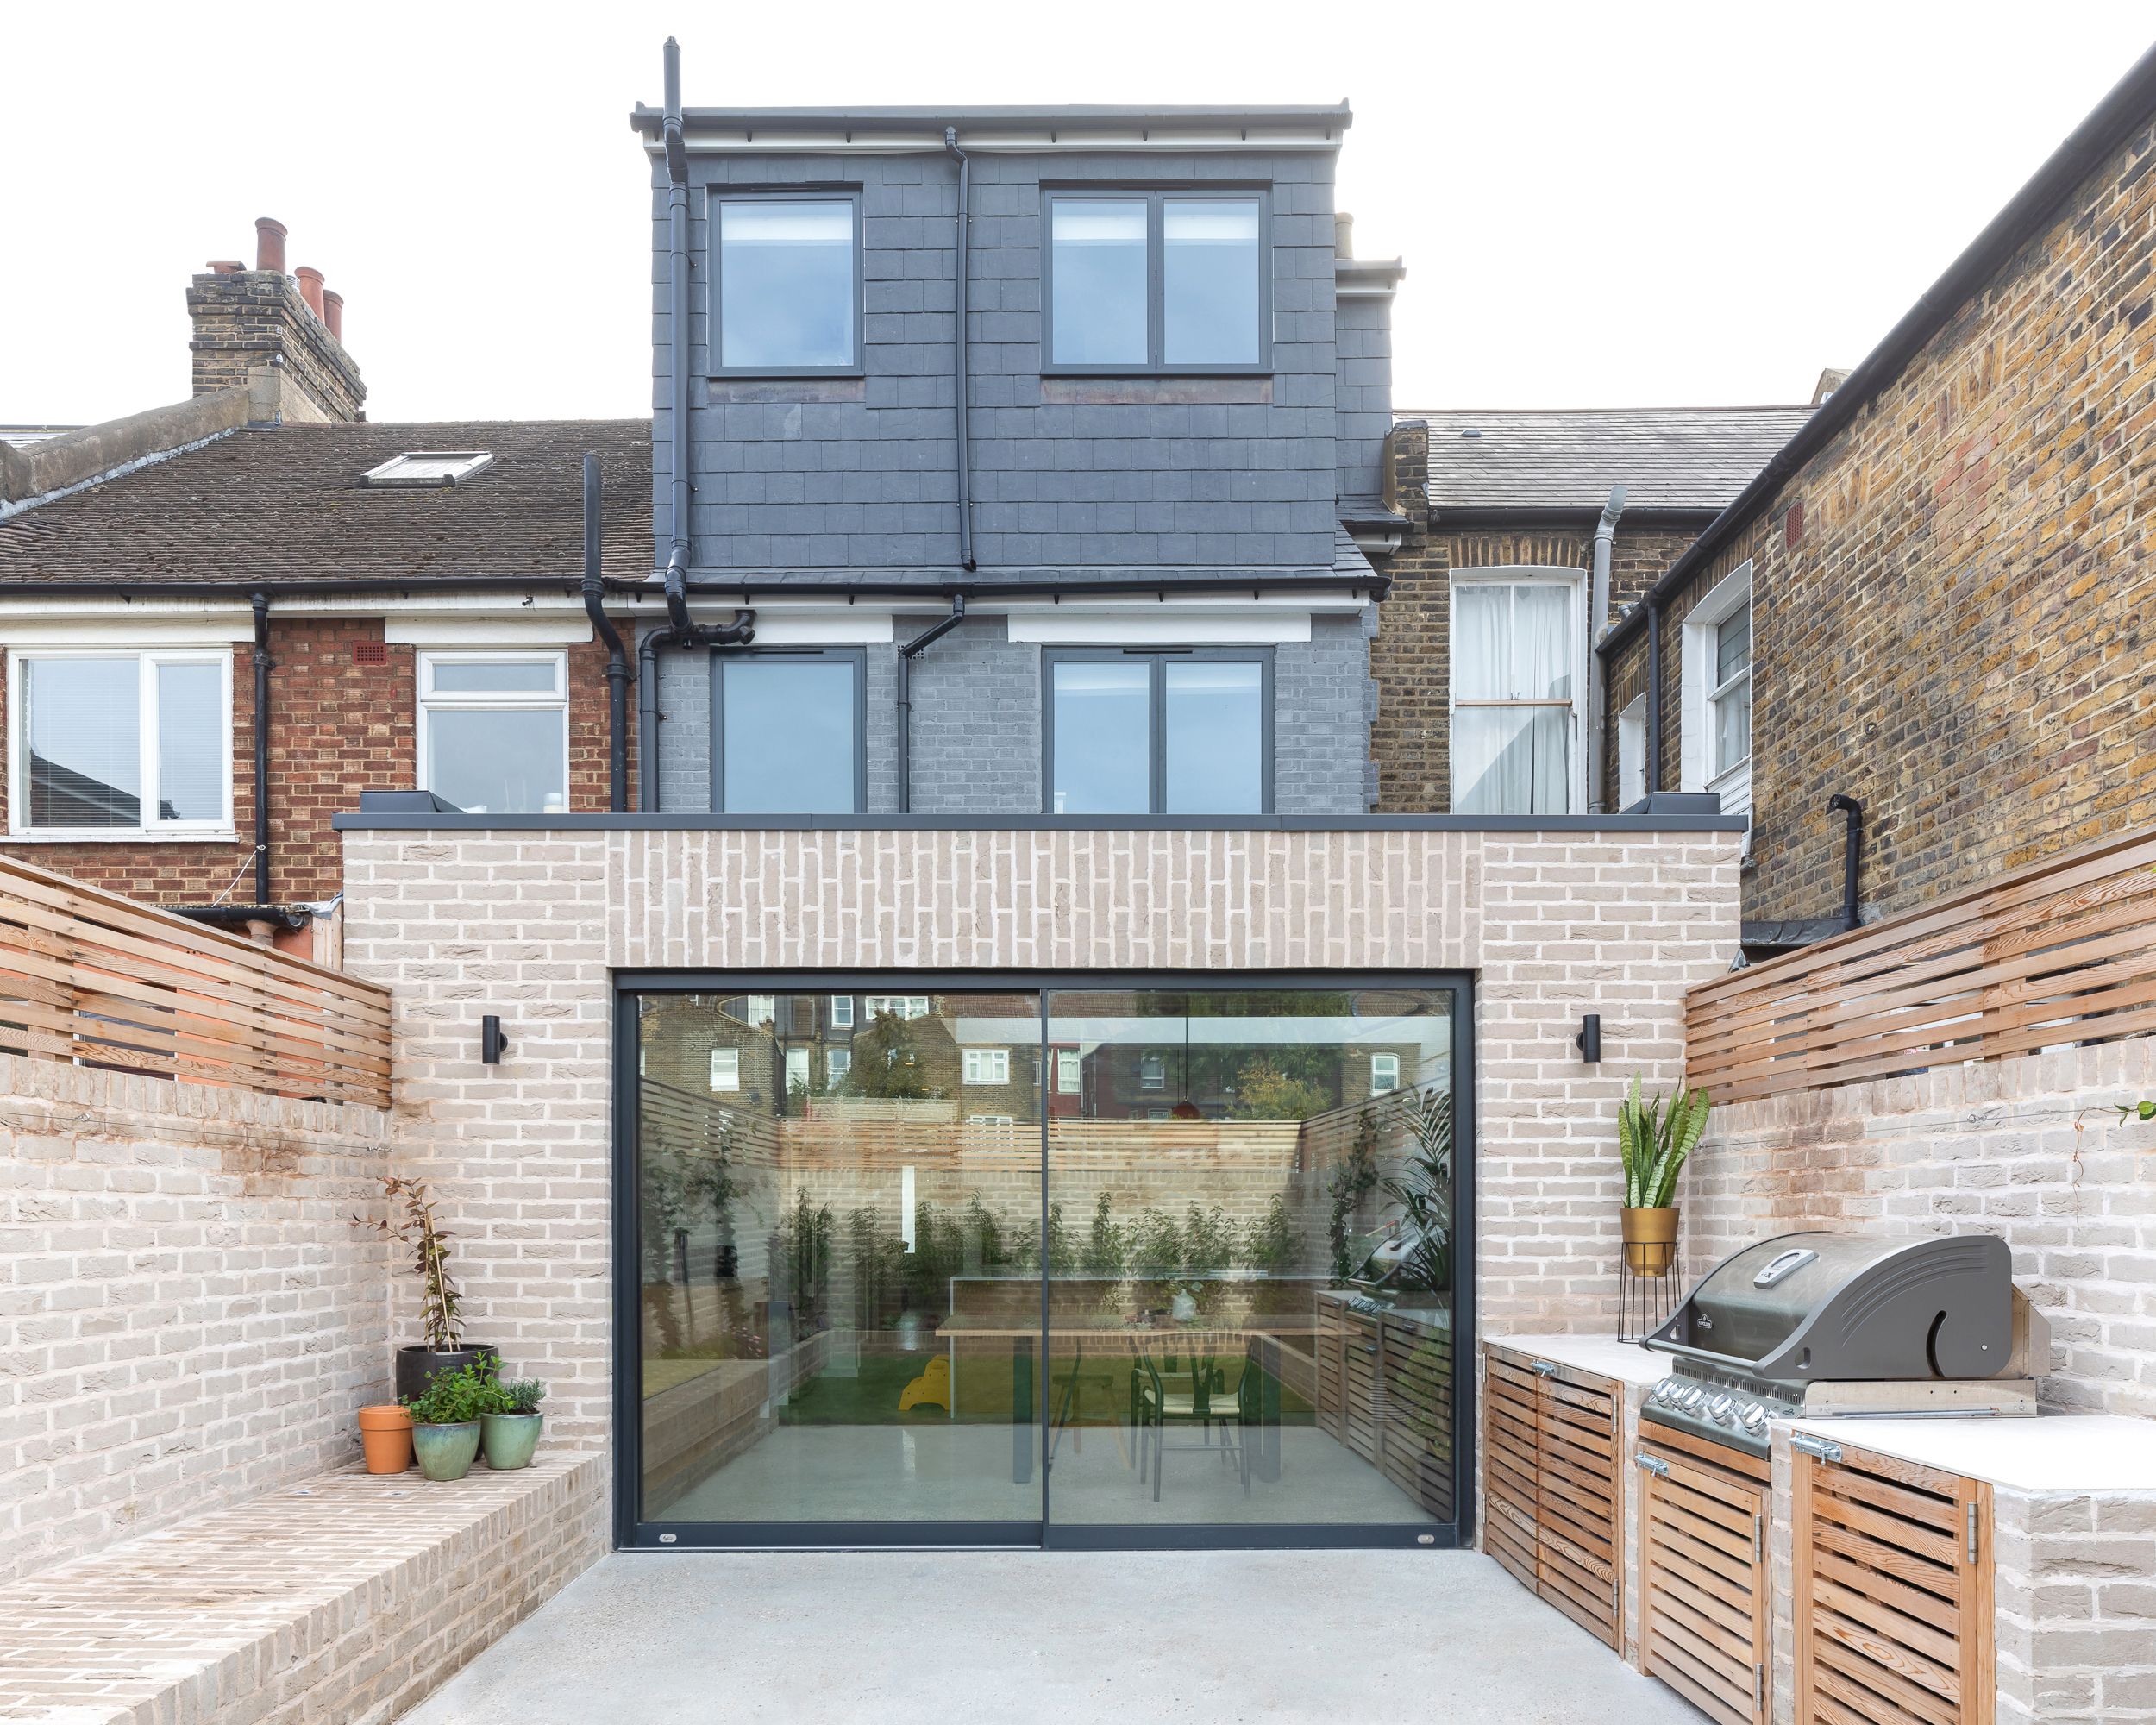 Bagudvidelse af Neighbourhood Studio Architects, der fører ud til en terrasse med et udekøkken